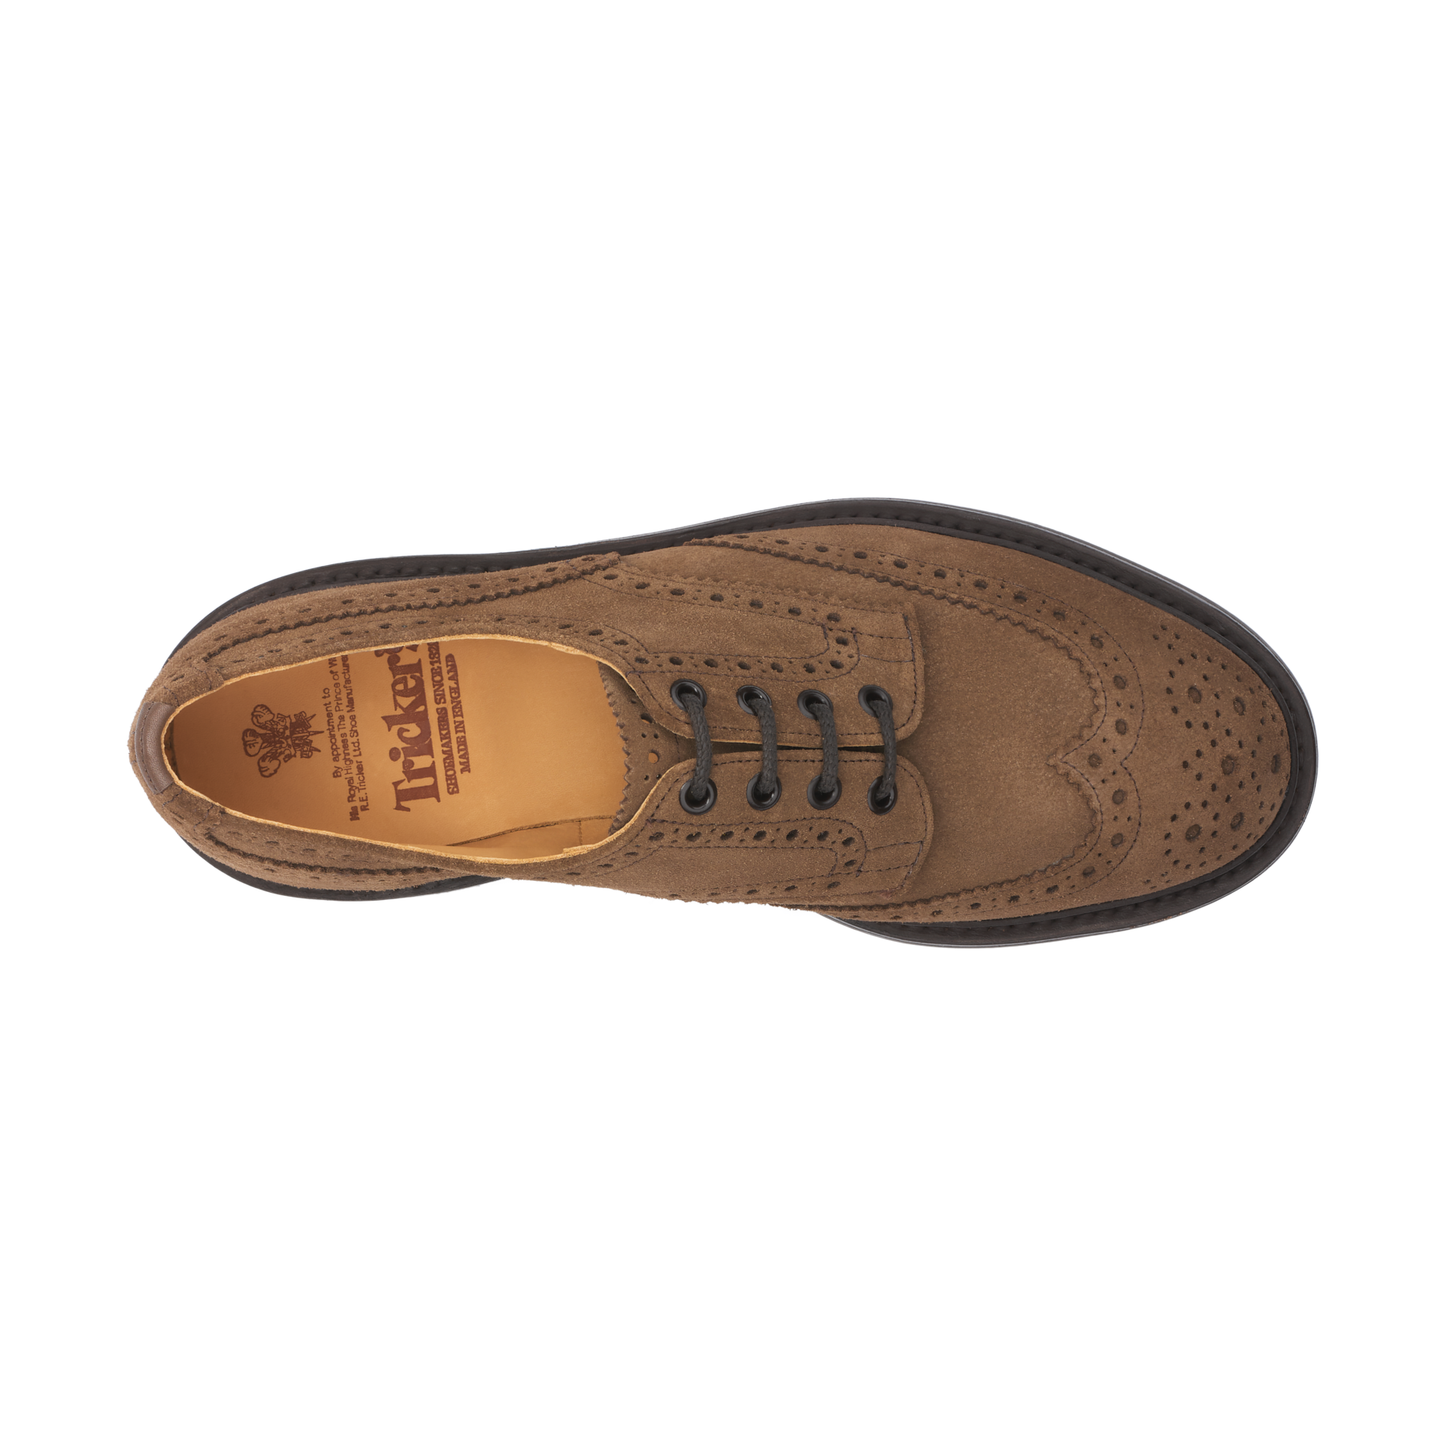 Tricker's "Bourton" Suede Derby Shoes in Brown - SARTALE